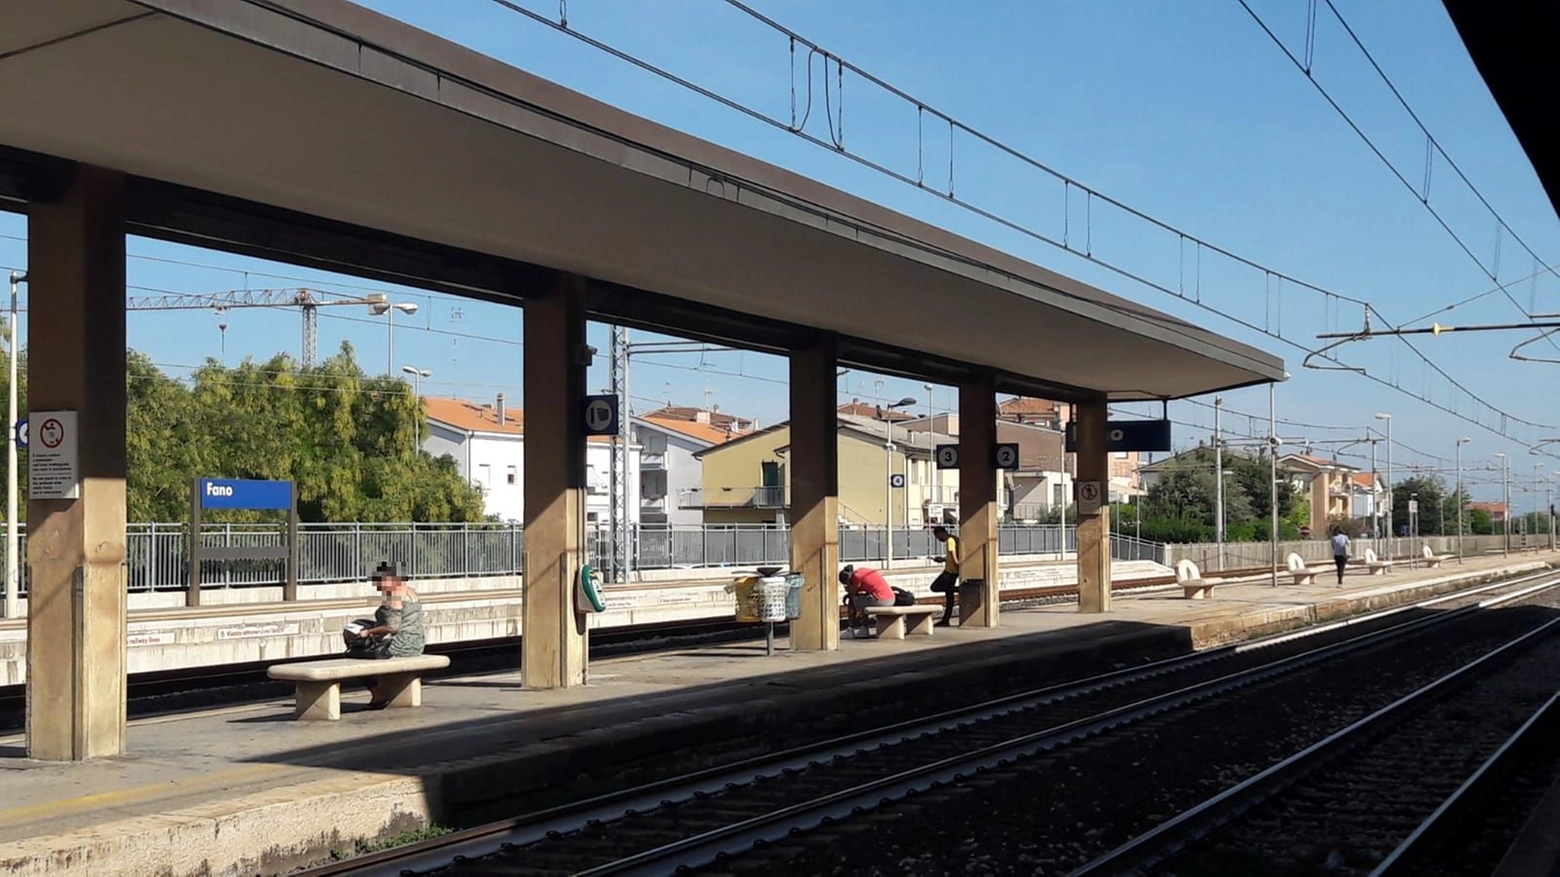 Investimento mortale alla stazione di Fano: treni in ritardo (foto repertorio)